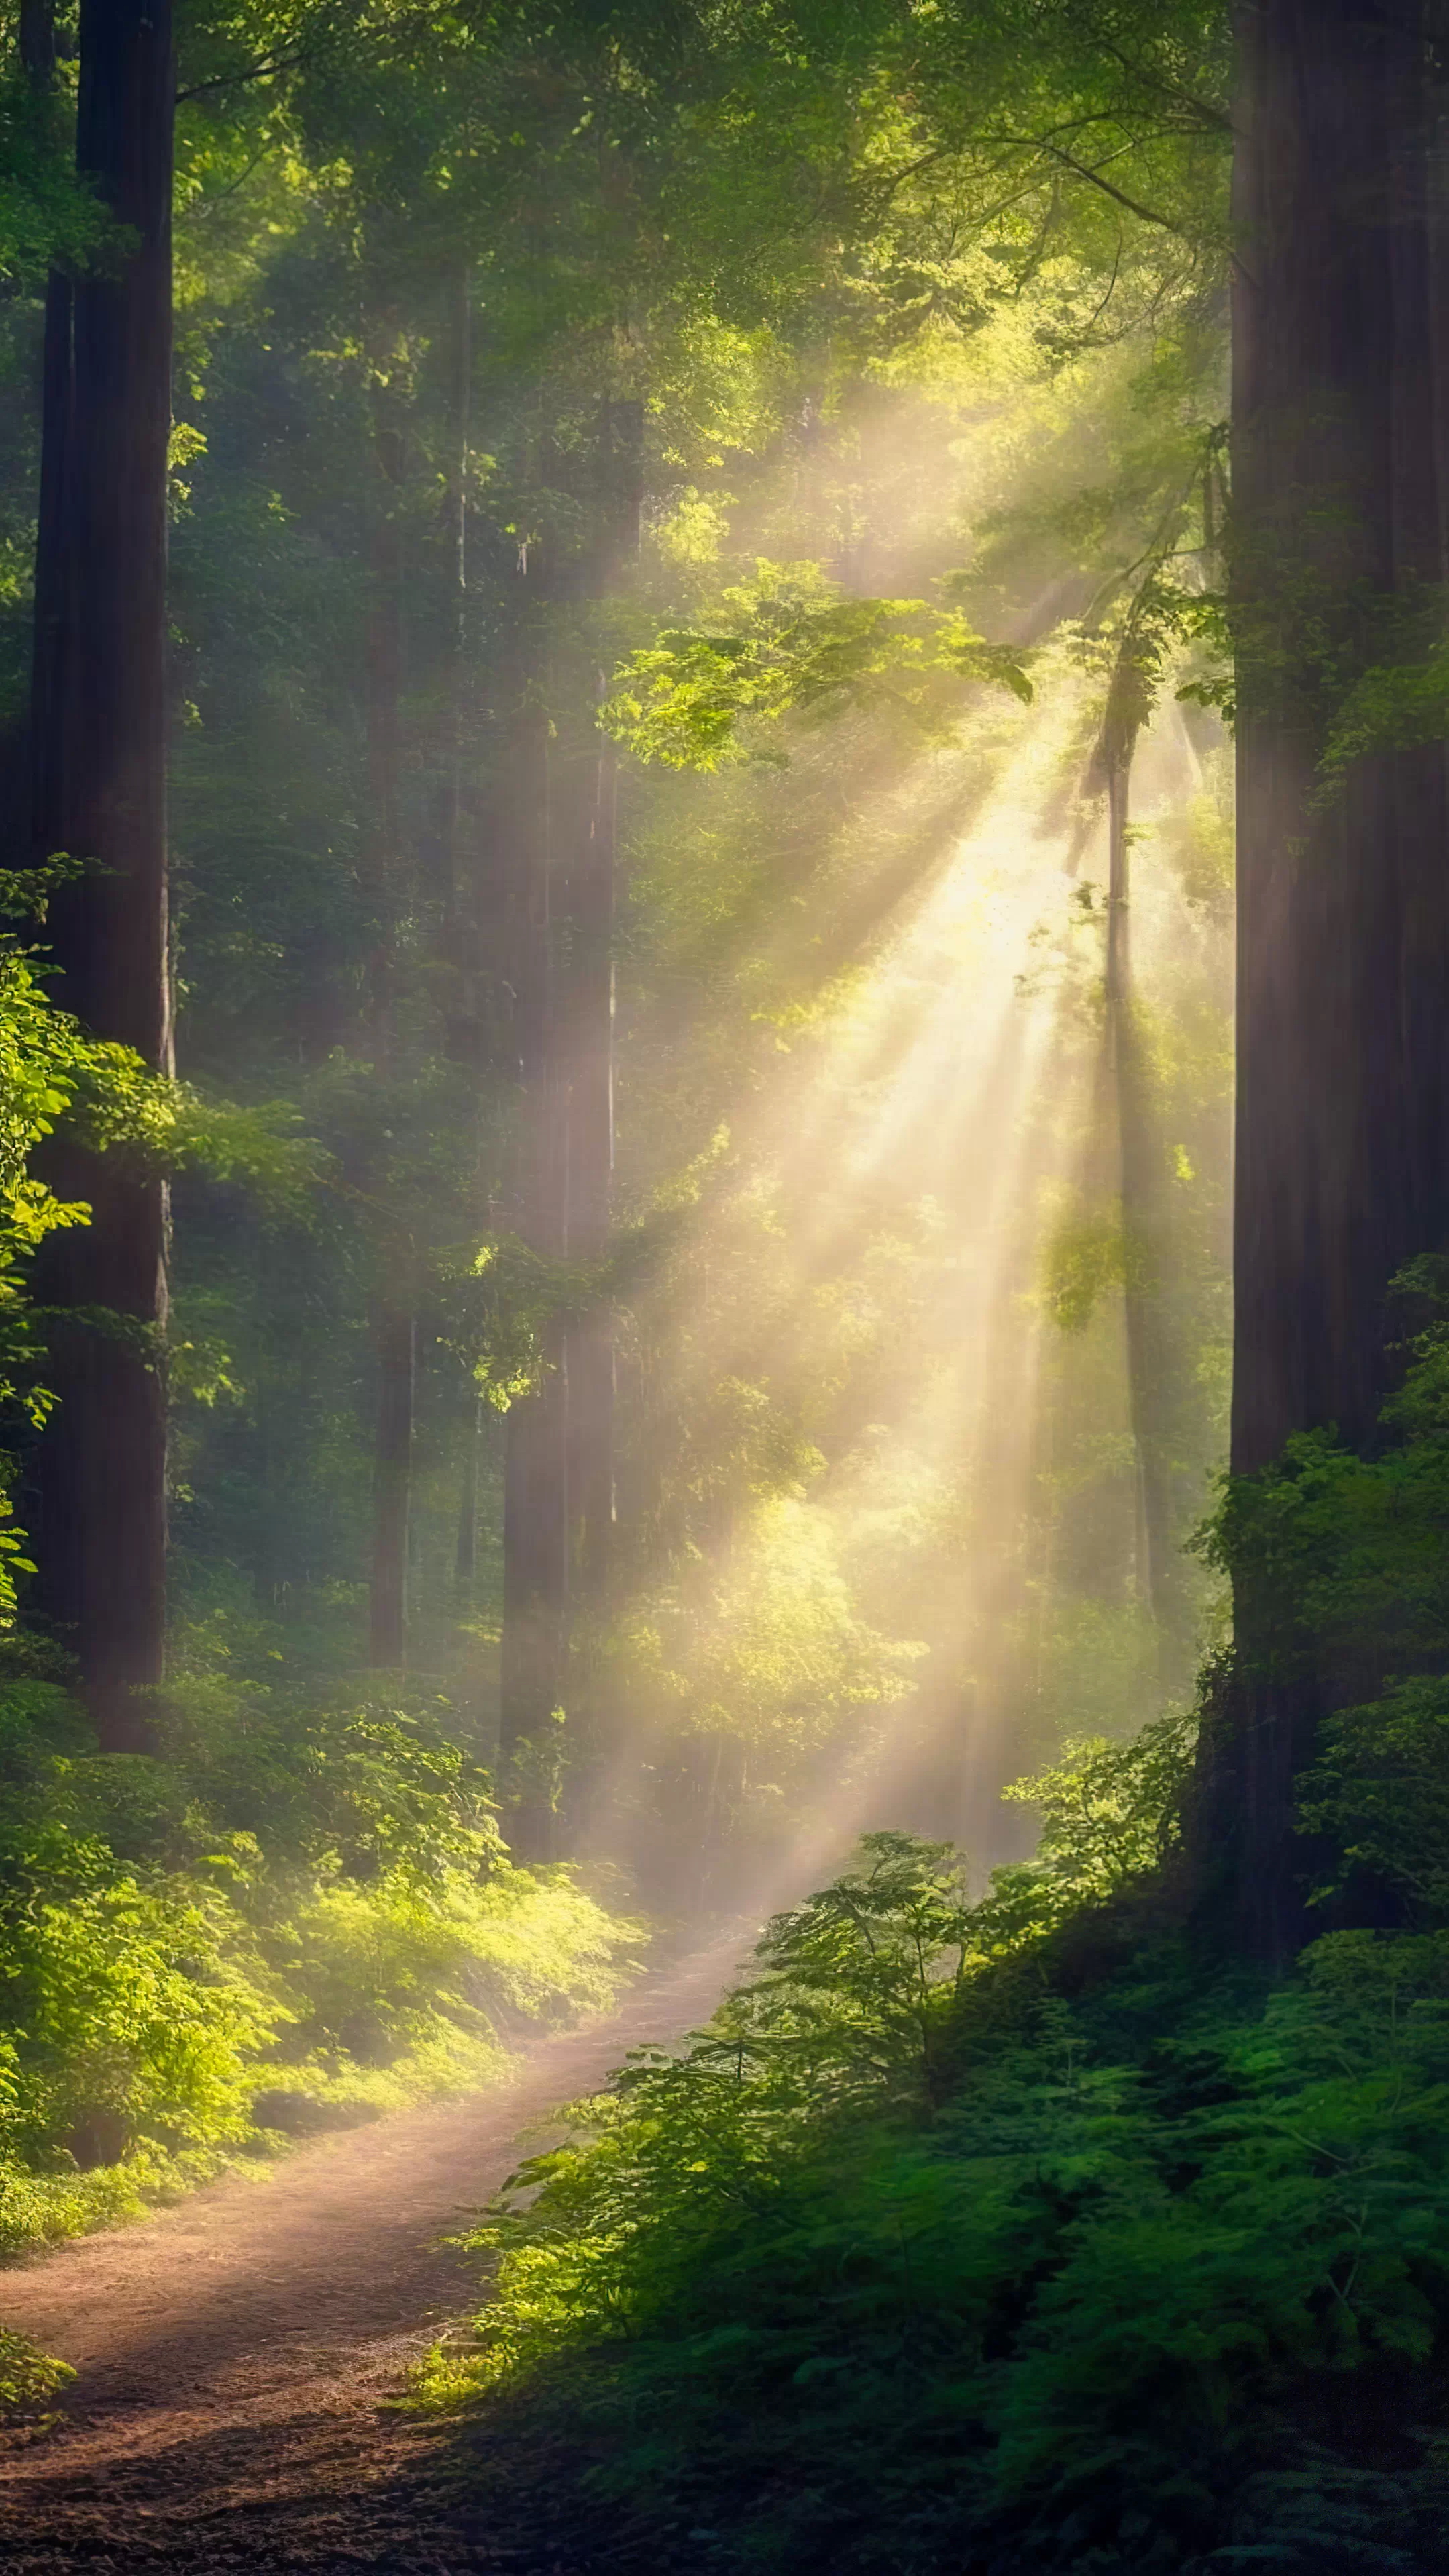 Ornez votre mobile avec notre fond d'écran nature en HD, présentant une forêt dense baignée de lumière solaire filtrant à travers une canopée de feuilles, et laissez votre écran devenir une porte vers le cœur de la forêt.